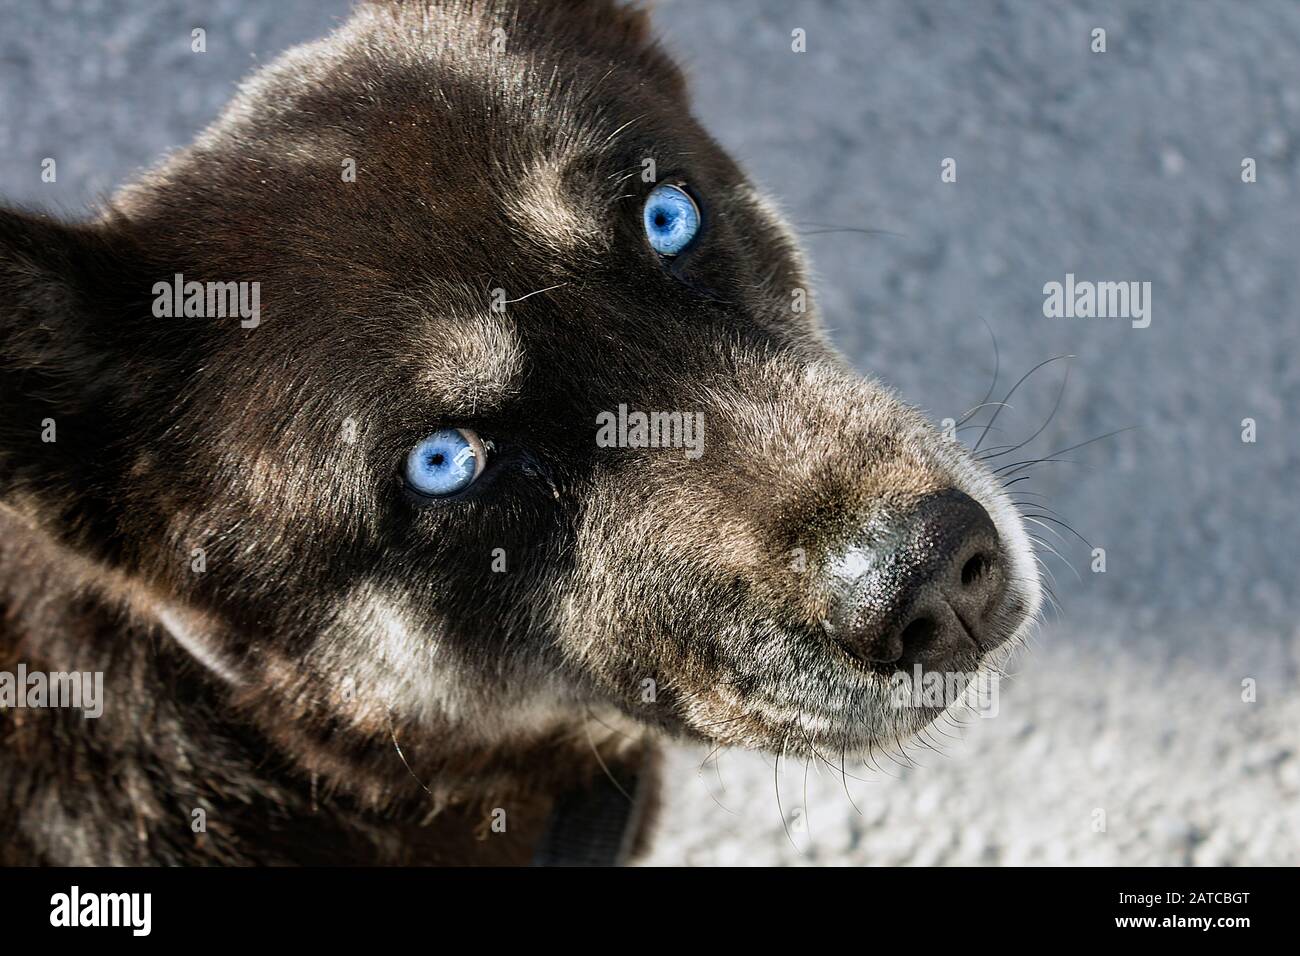 Primo piano ritratto della testa di un cane randagio, mulatto, ereditati Husky occhi di colore blu ghiaccio, guardando la fotocamera in alto angolo di vista immagine. Foto Stock